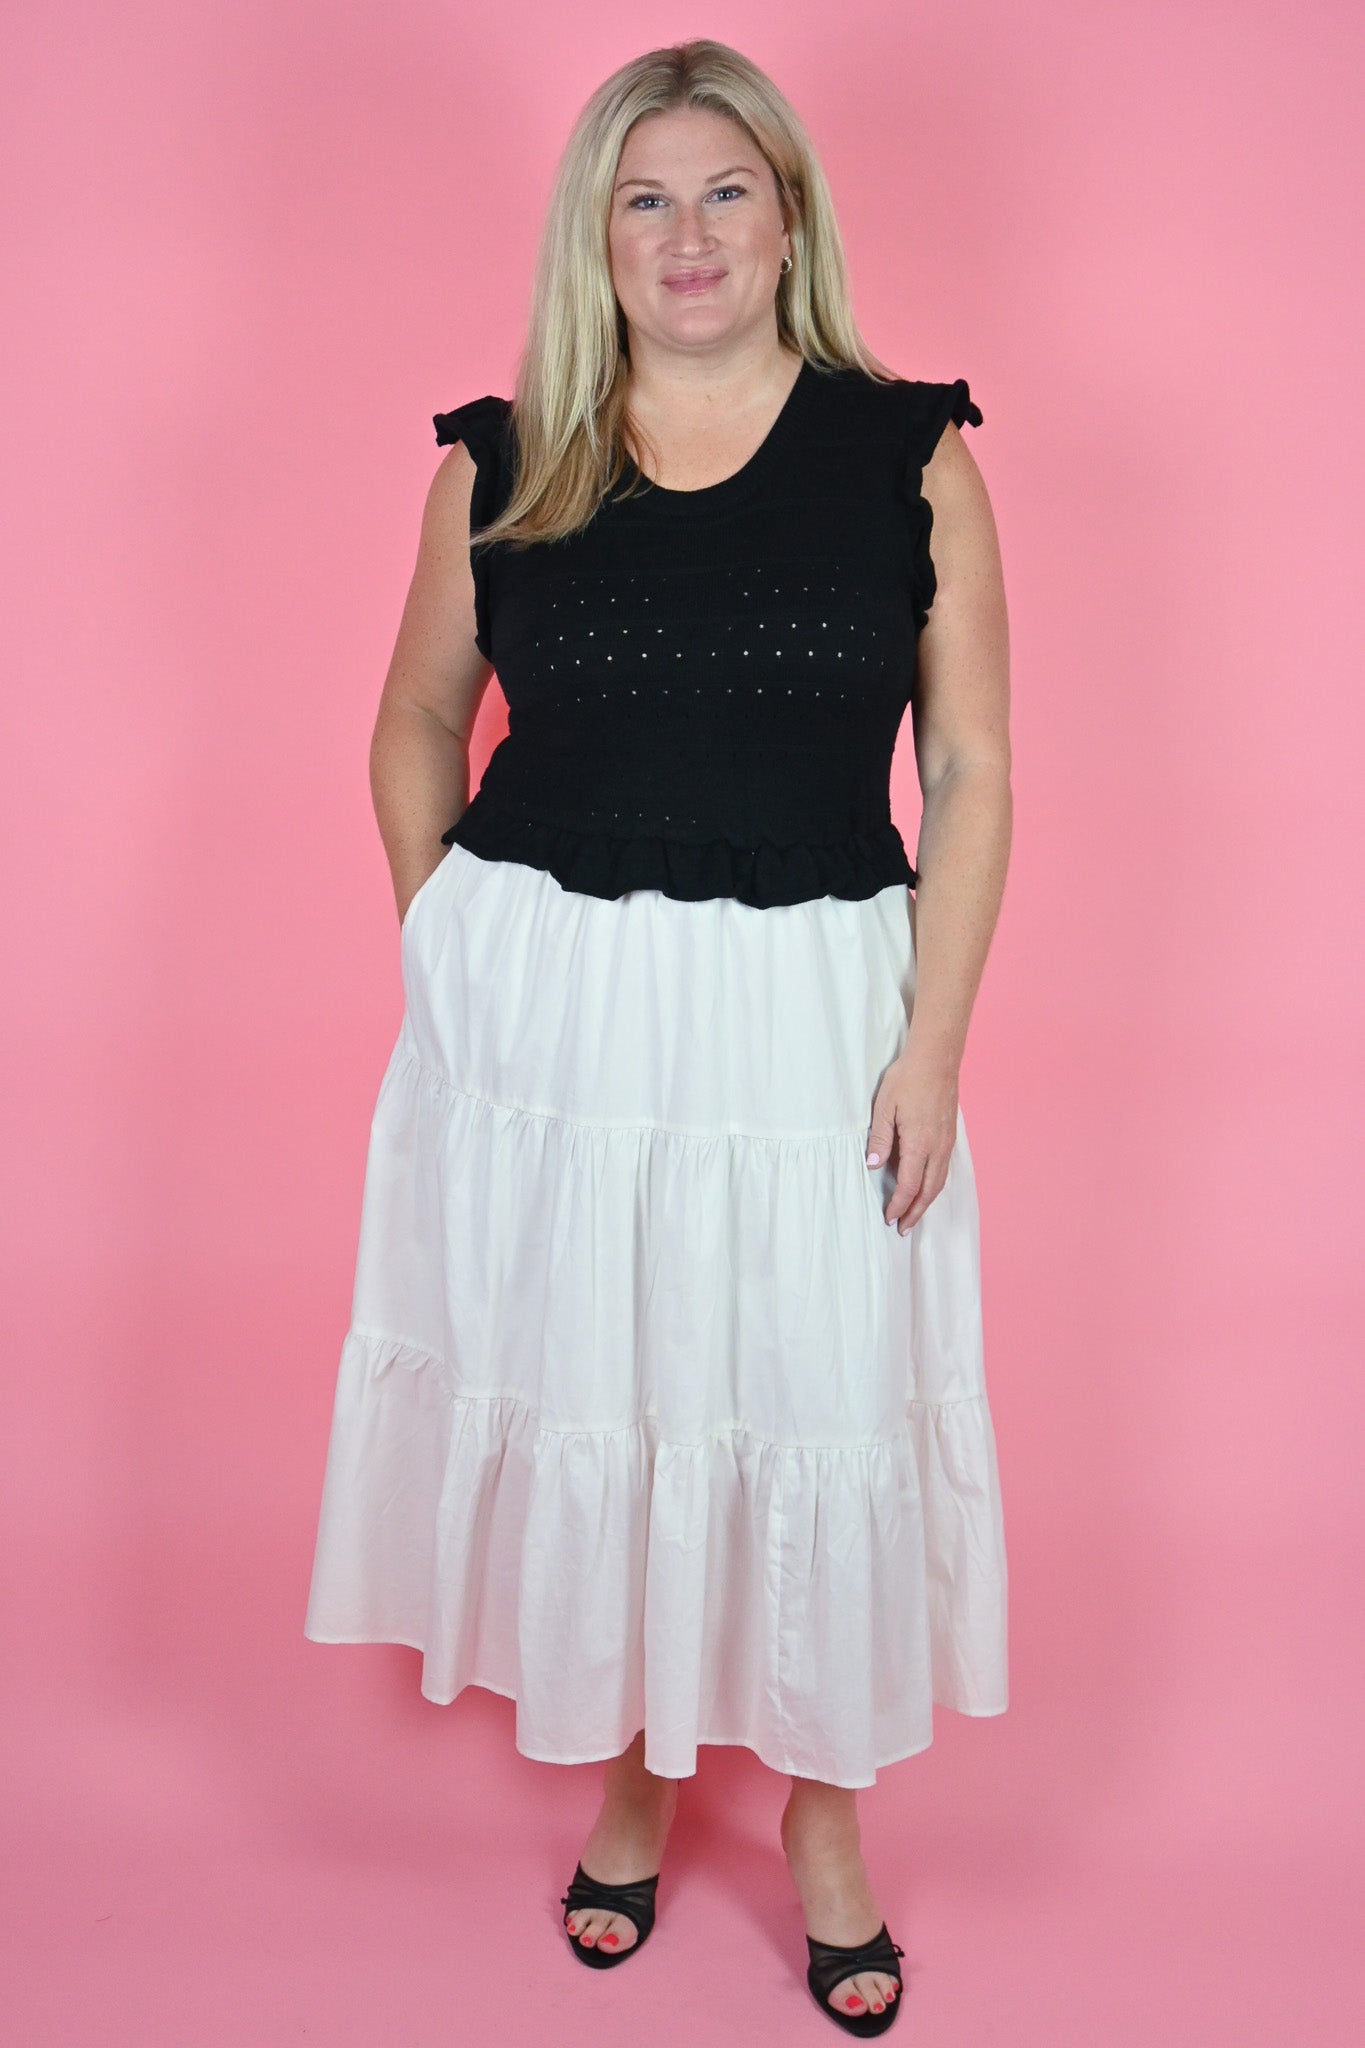 Heyson Knit top poplin Skirt Midi dress